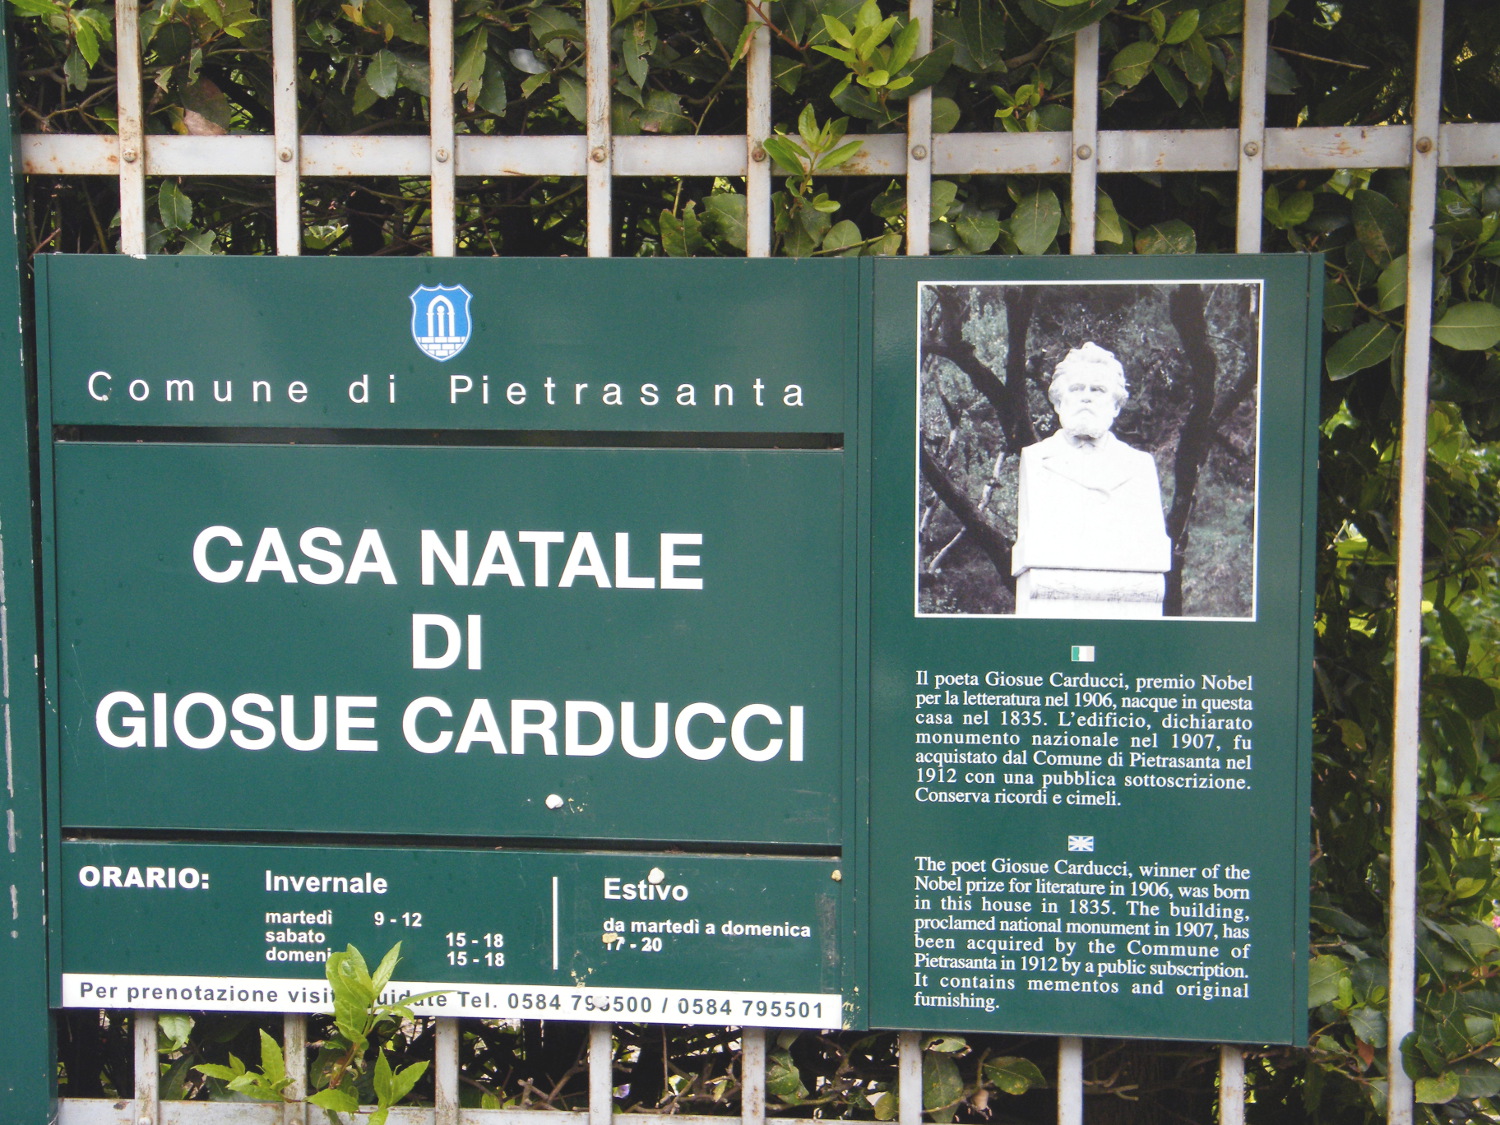 Carducci è il sommo poeta toscano nato a Valdicastello, Pietrasanta nel 1835. La casa natale di Giosuè Carducci è oggi una Casa della Memoria